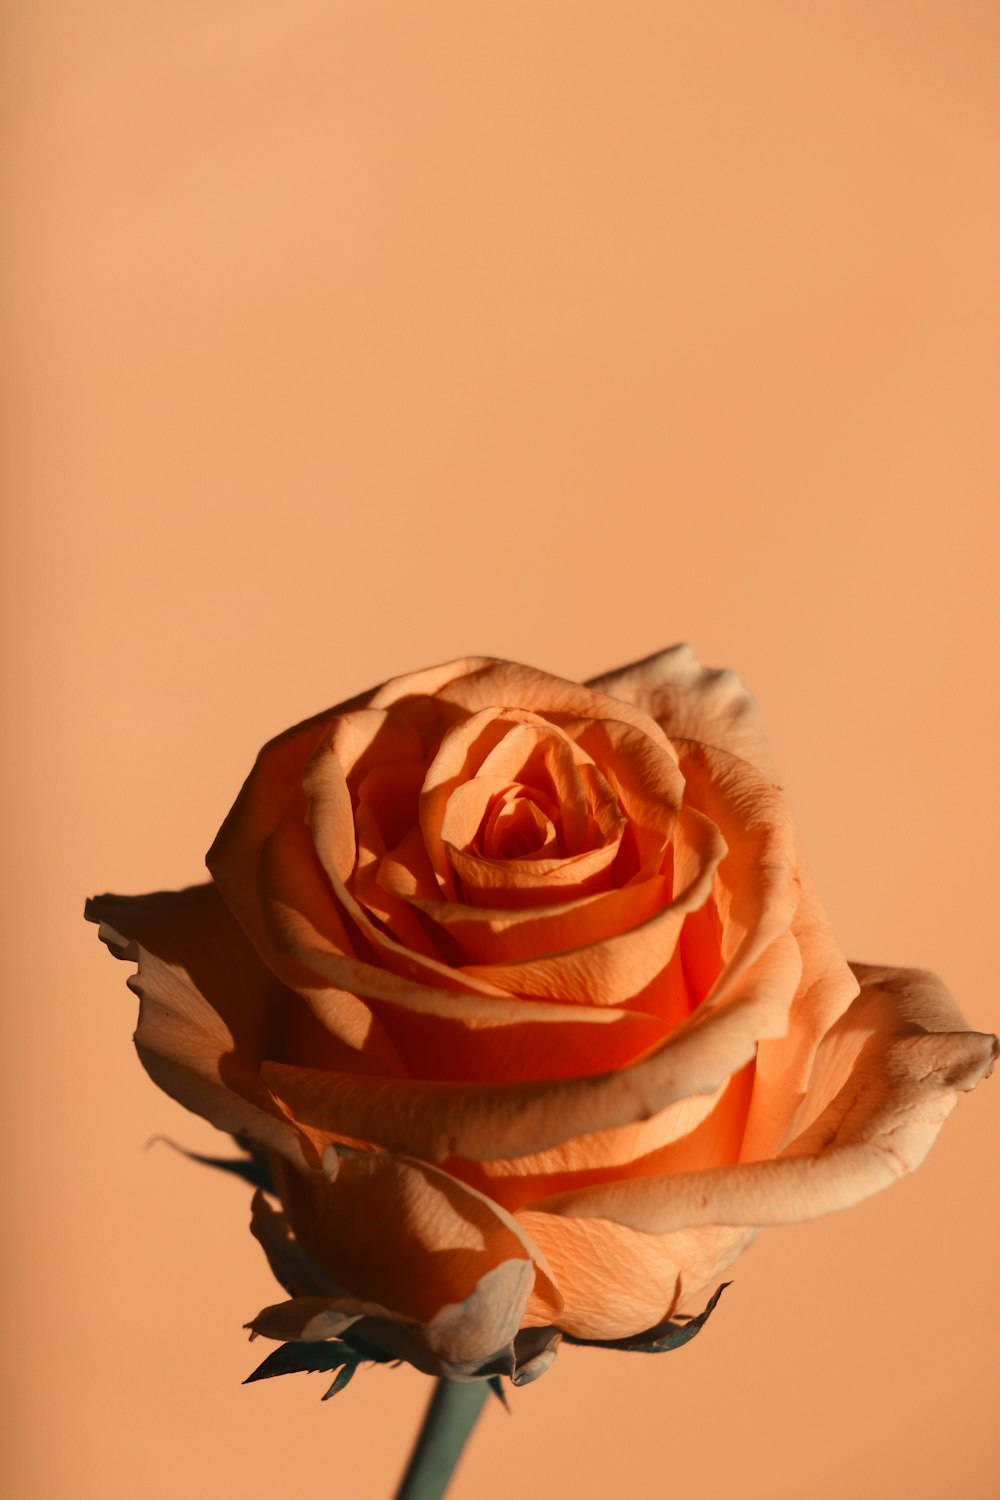 Rosa und weiße Rose in Nahaufnahmen